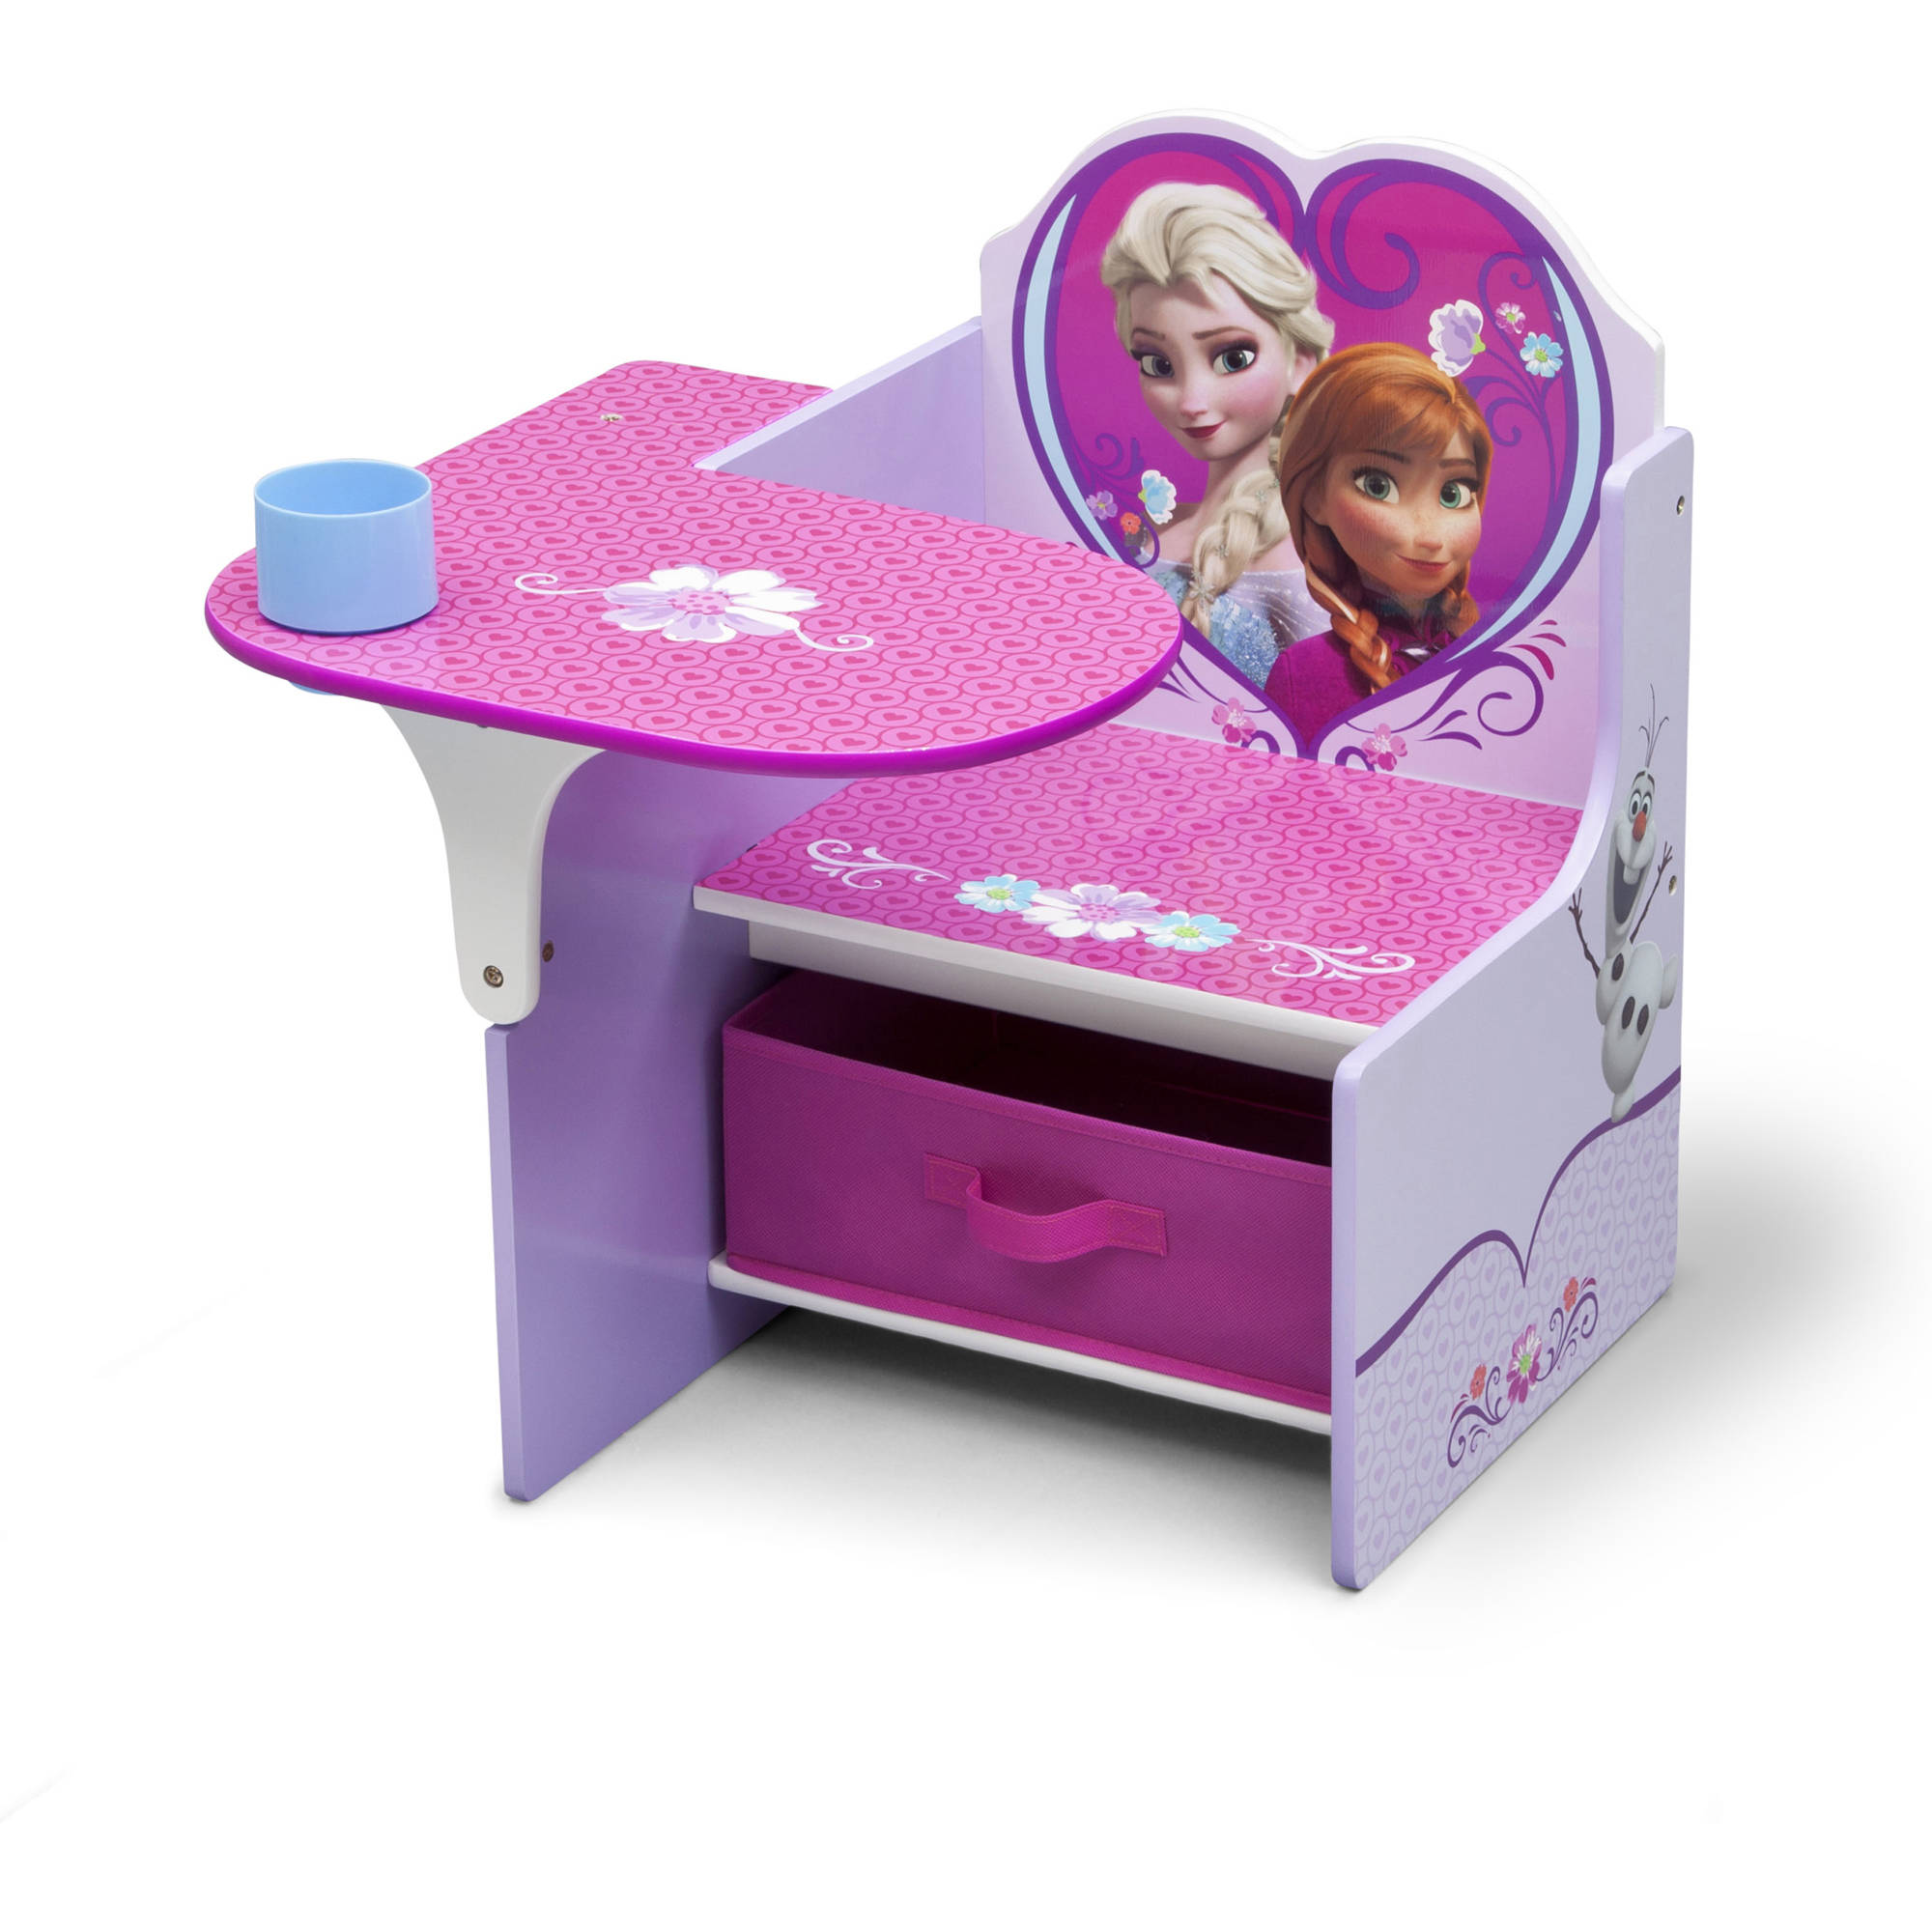 Disney Frozen Chair Desk with Storage Bin by Delta Children